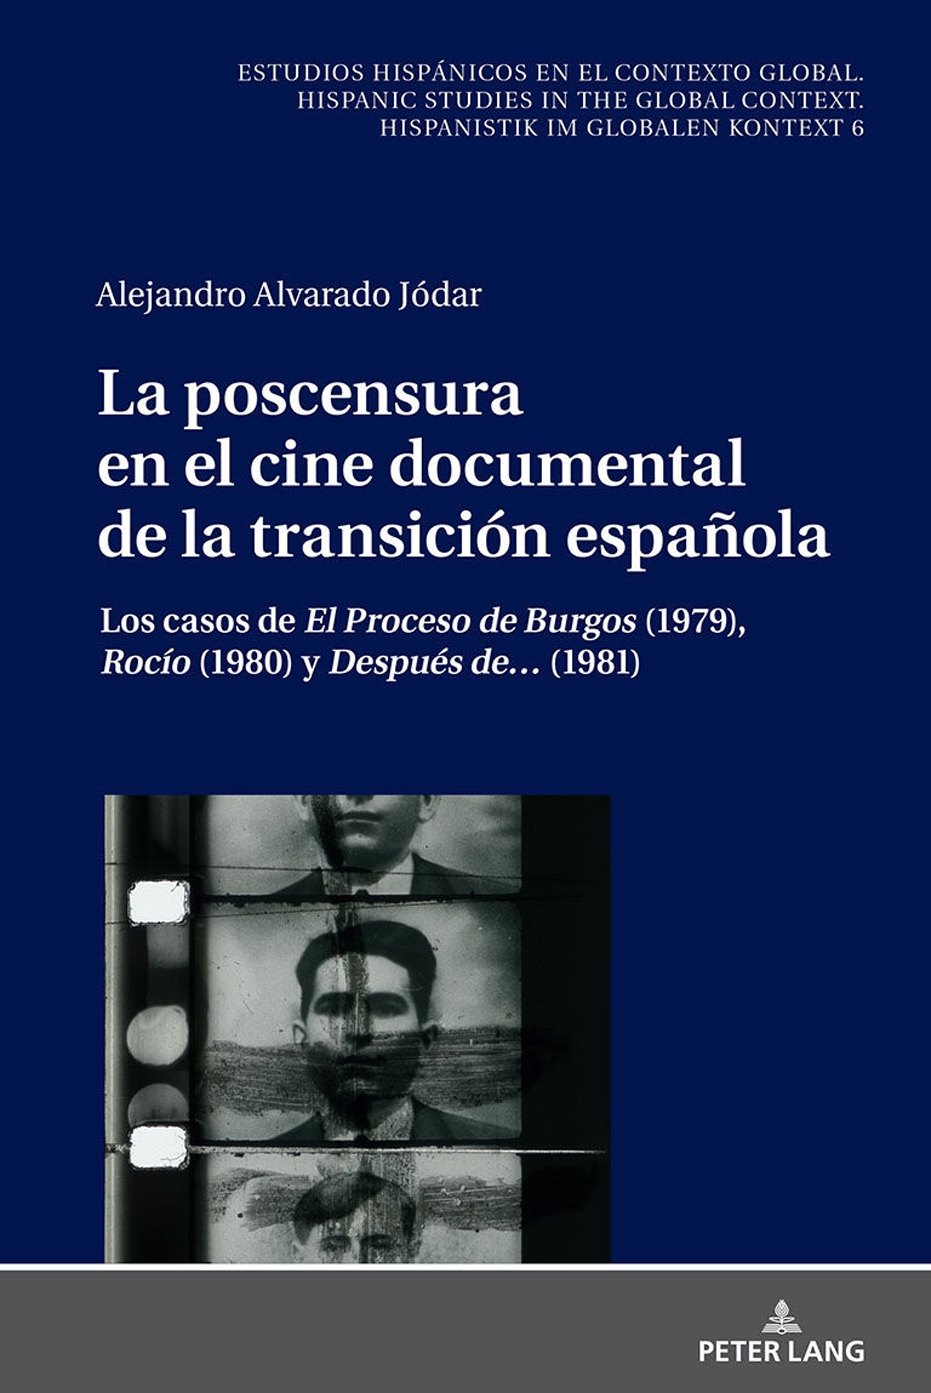 Coloquio presentación de 'La poscensura en el cine documental de la transición española', de Alejandro Alvarado